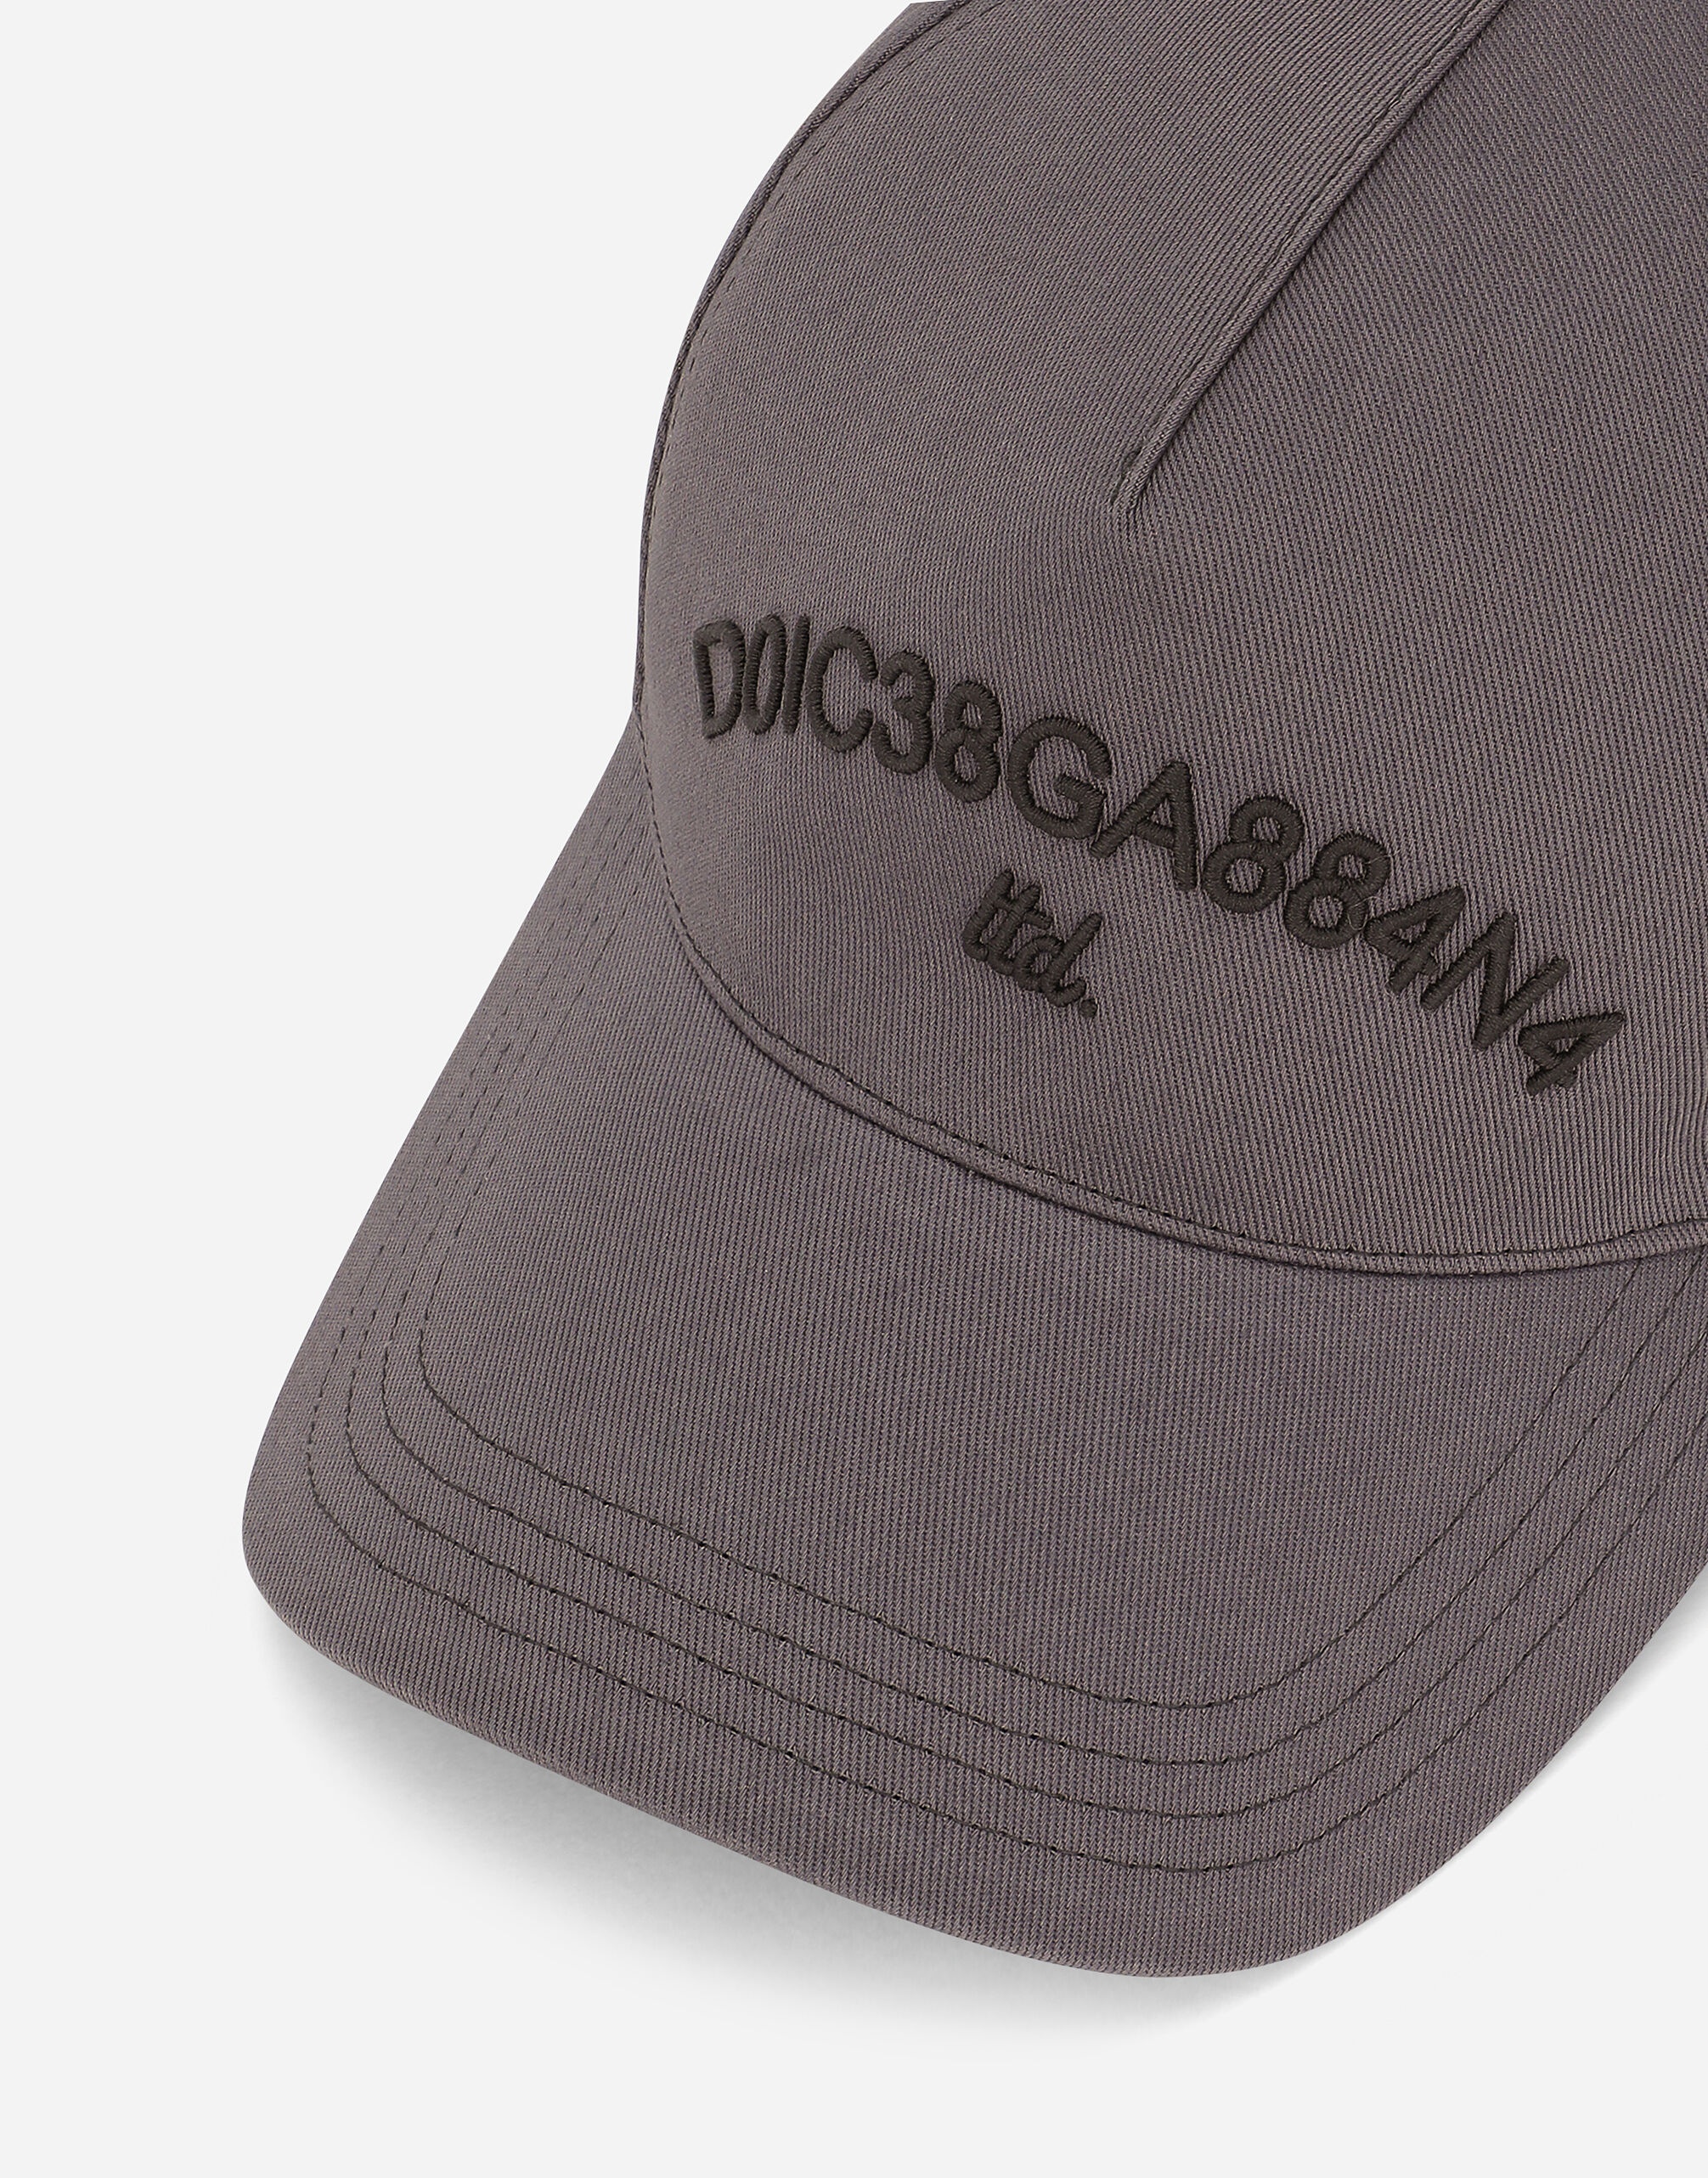 Baseball cap with Dolce&Gabbana logo - 2